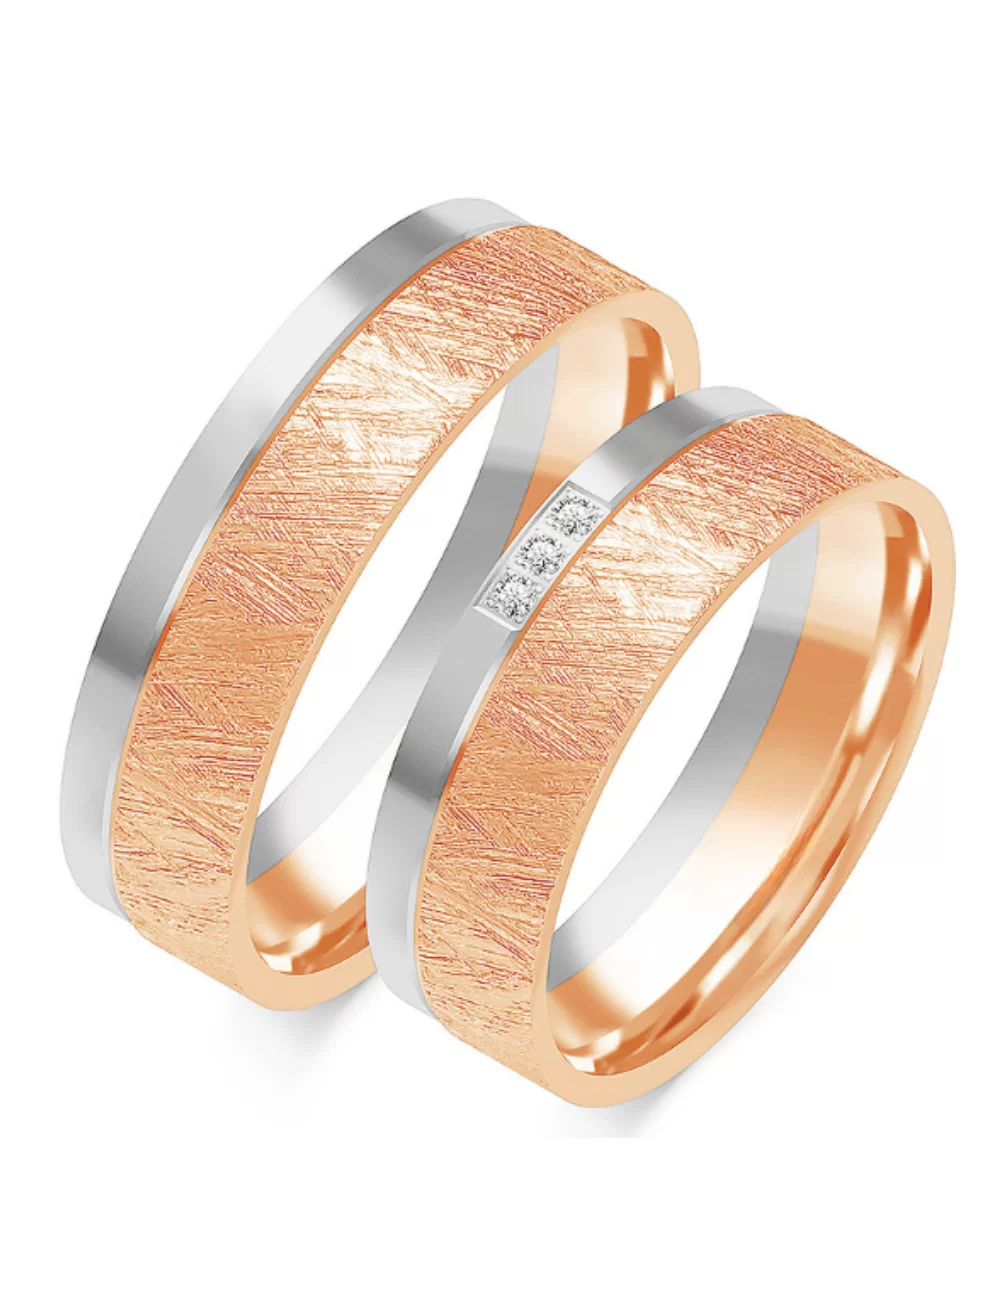 vestuviniai žiedai su gilia faktūra dviejų aukso spalvų